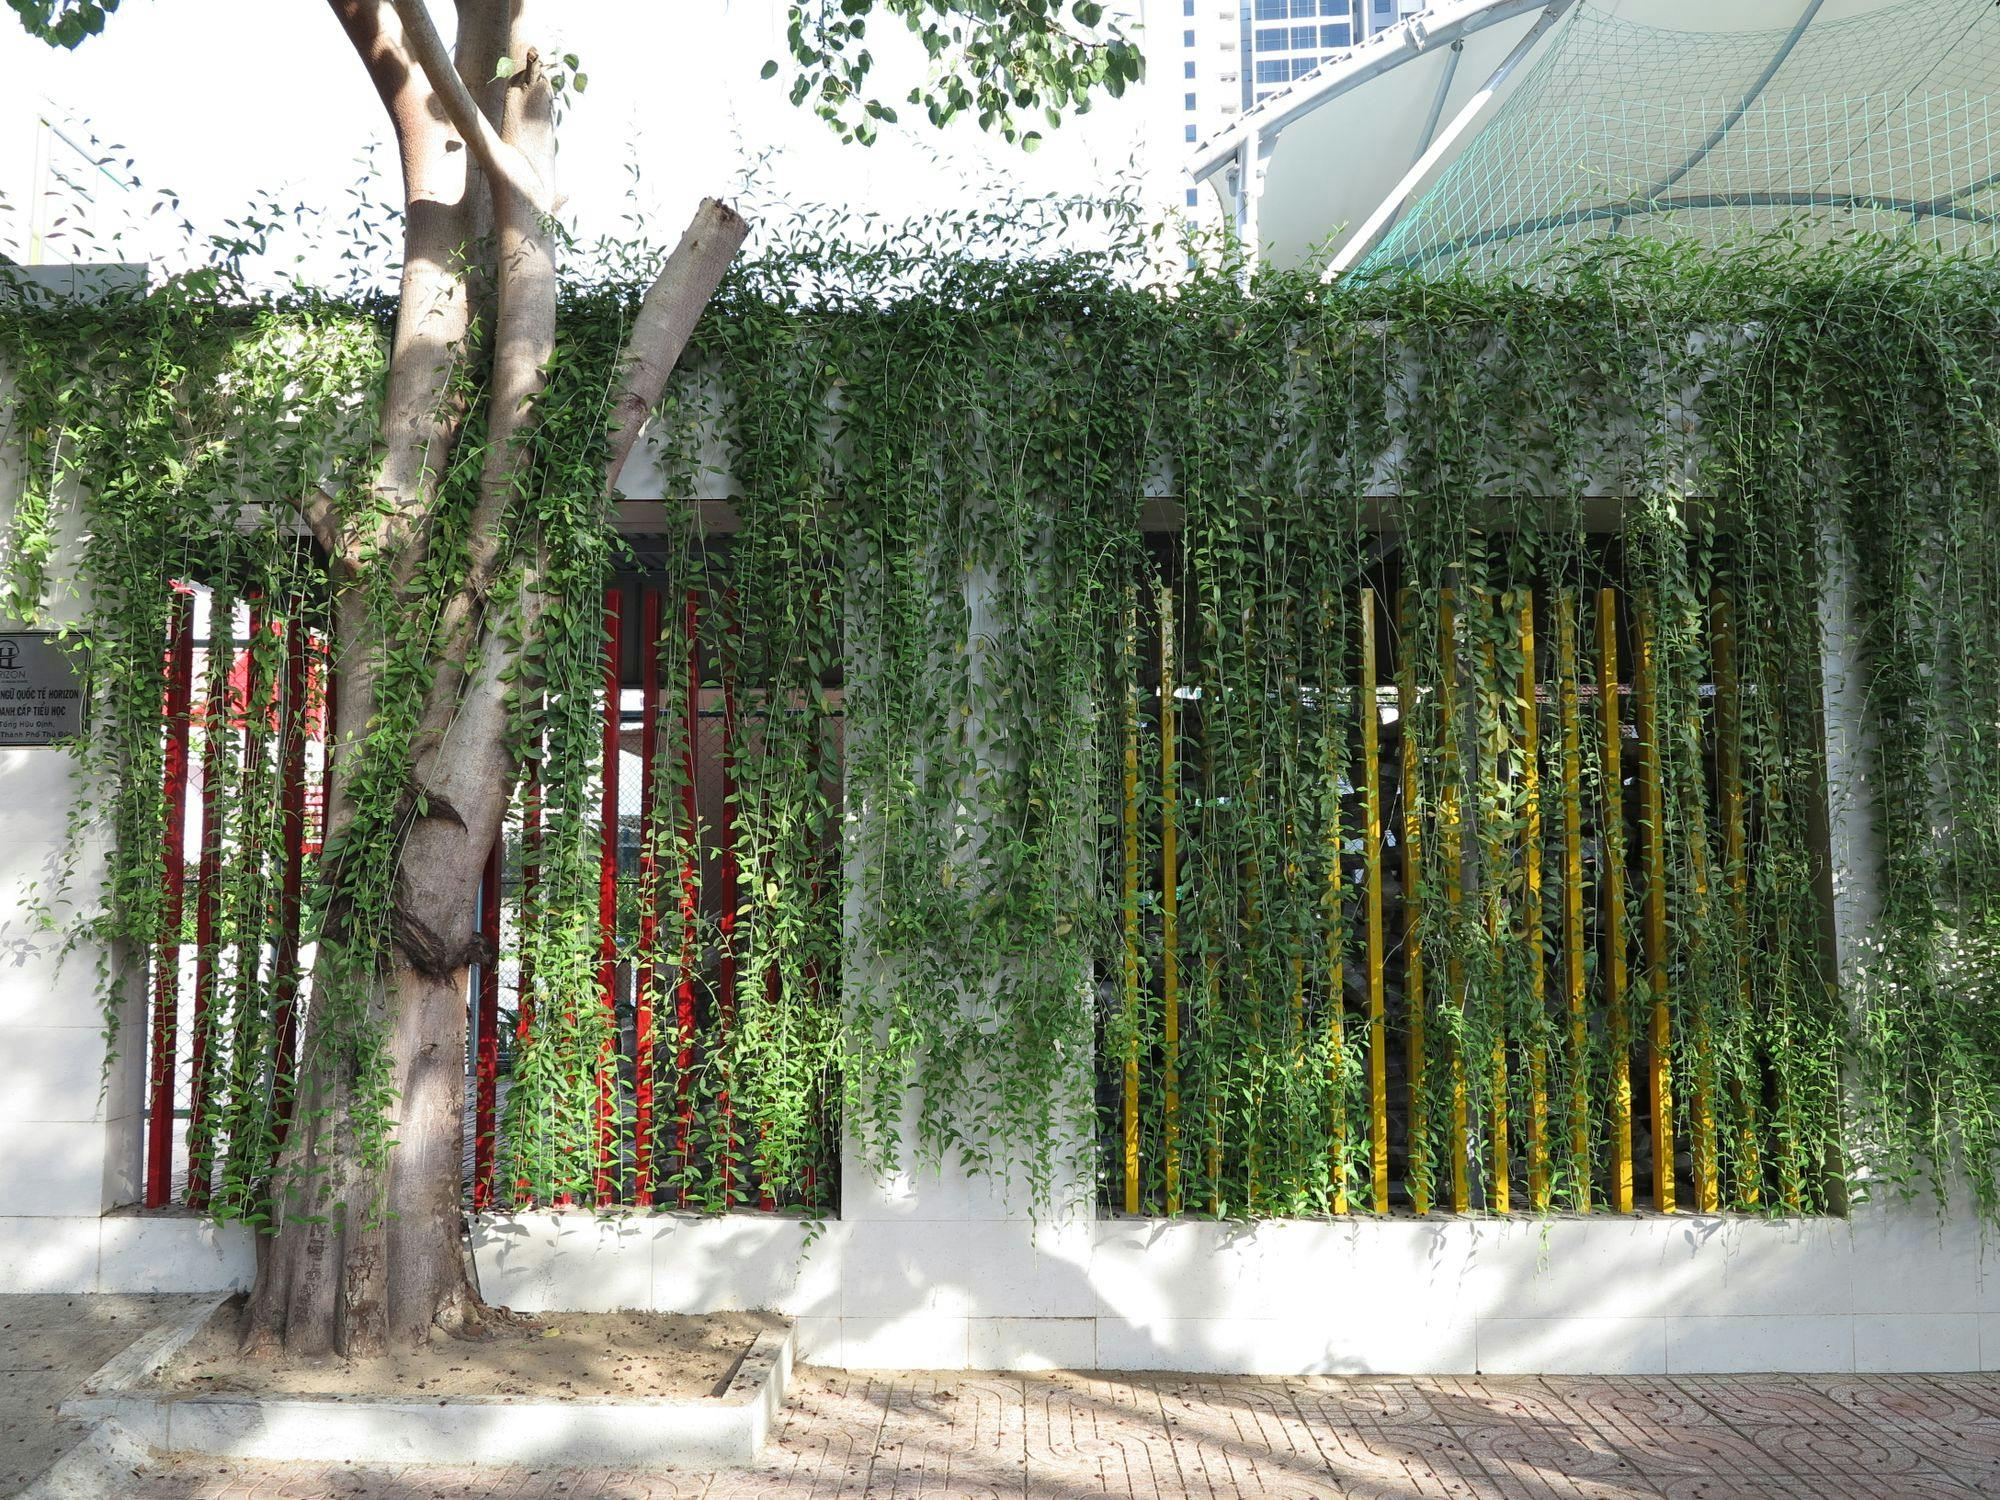 Nơi nào ở Sài Gòn yêu cây xanh nhất?